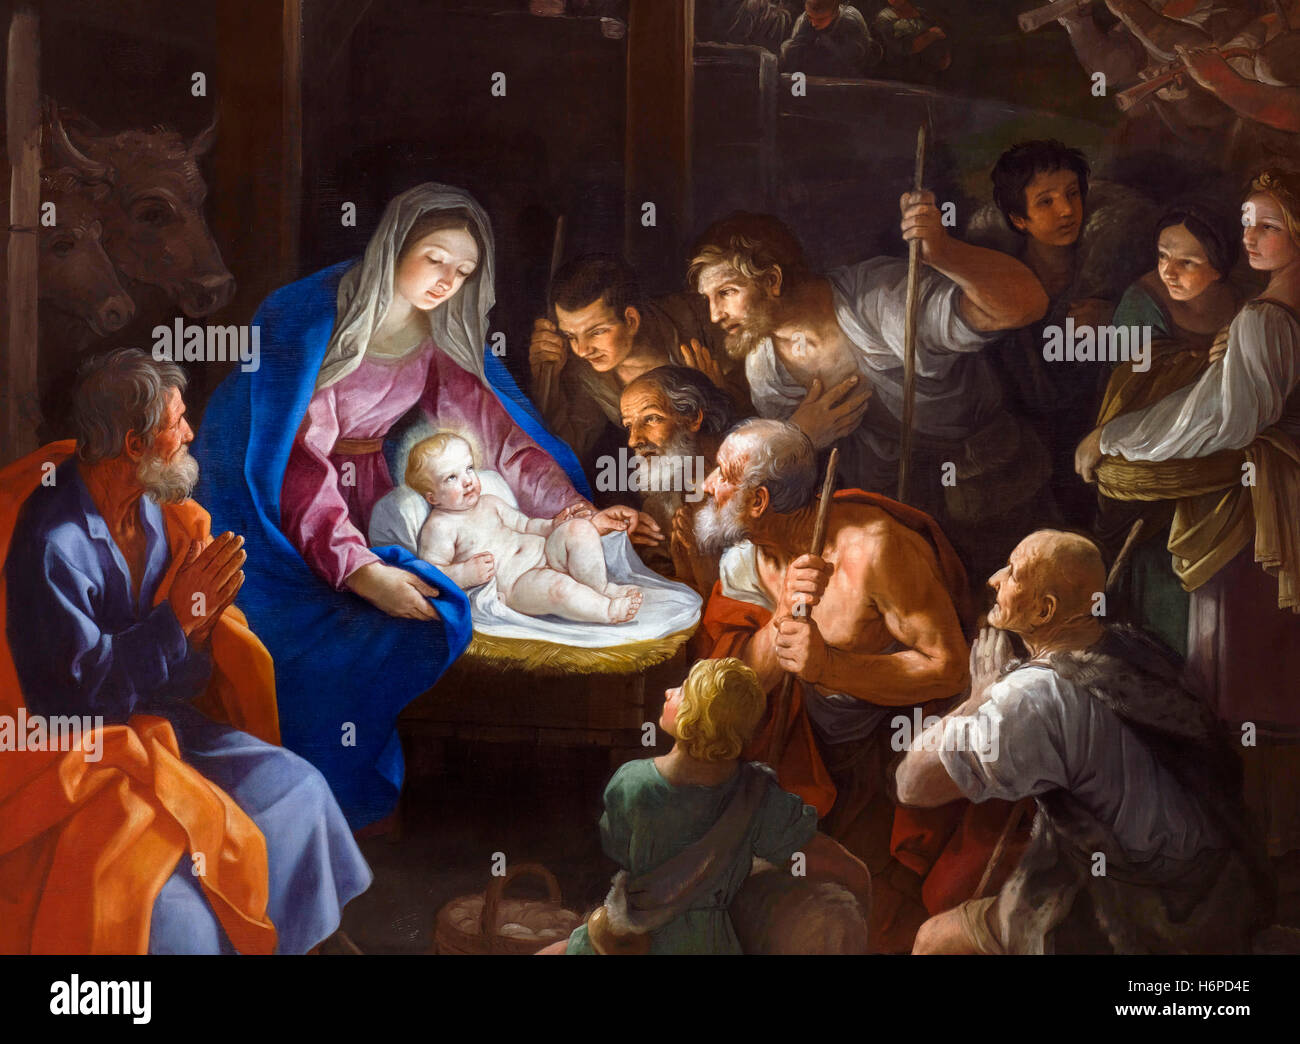 Scène de la nativité. 'L'Adoration des bergers" par Guido Reni (1575-1642), huile sur toile, 1640. C'est un détail d'une grande peinture, G29XR6. Elle représente une scène de la nativité avec l'enfant Jésus d'être visité par des bergers. Banque D'Images